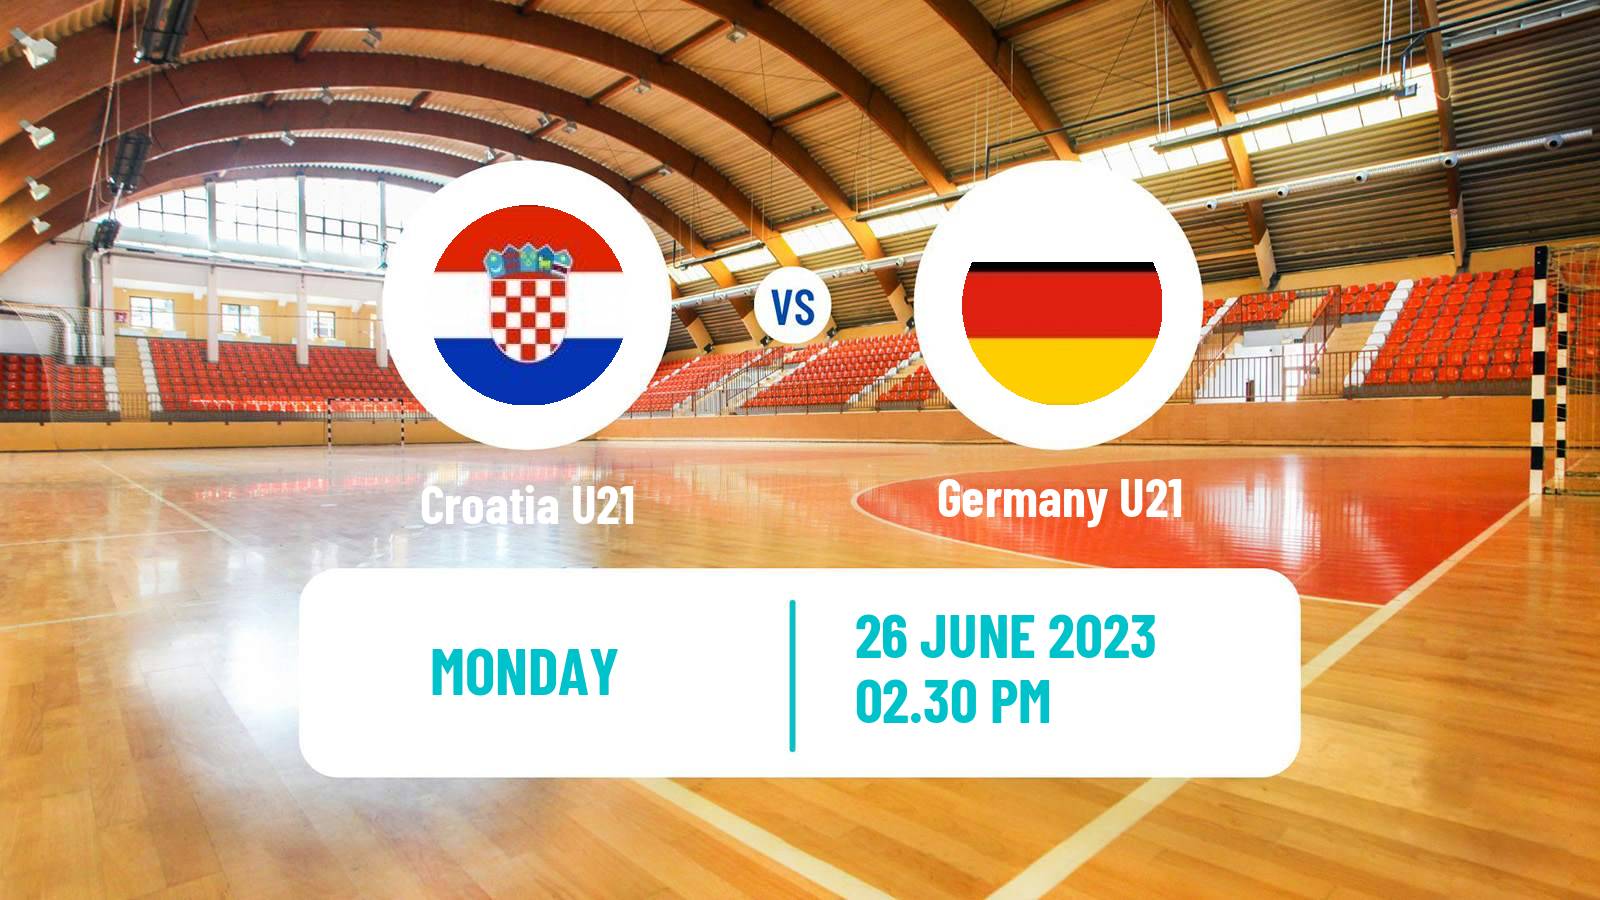 Handball World Championship U21 Handball Croatia U21 - Germany U21